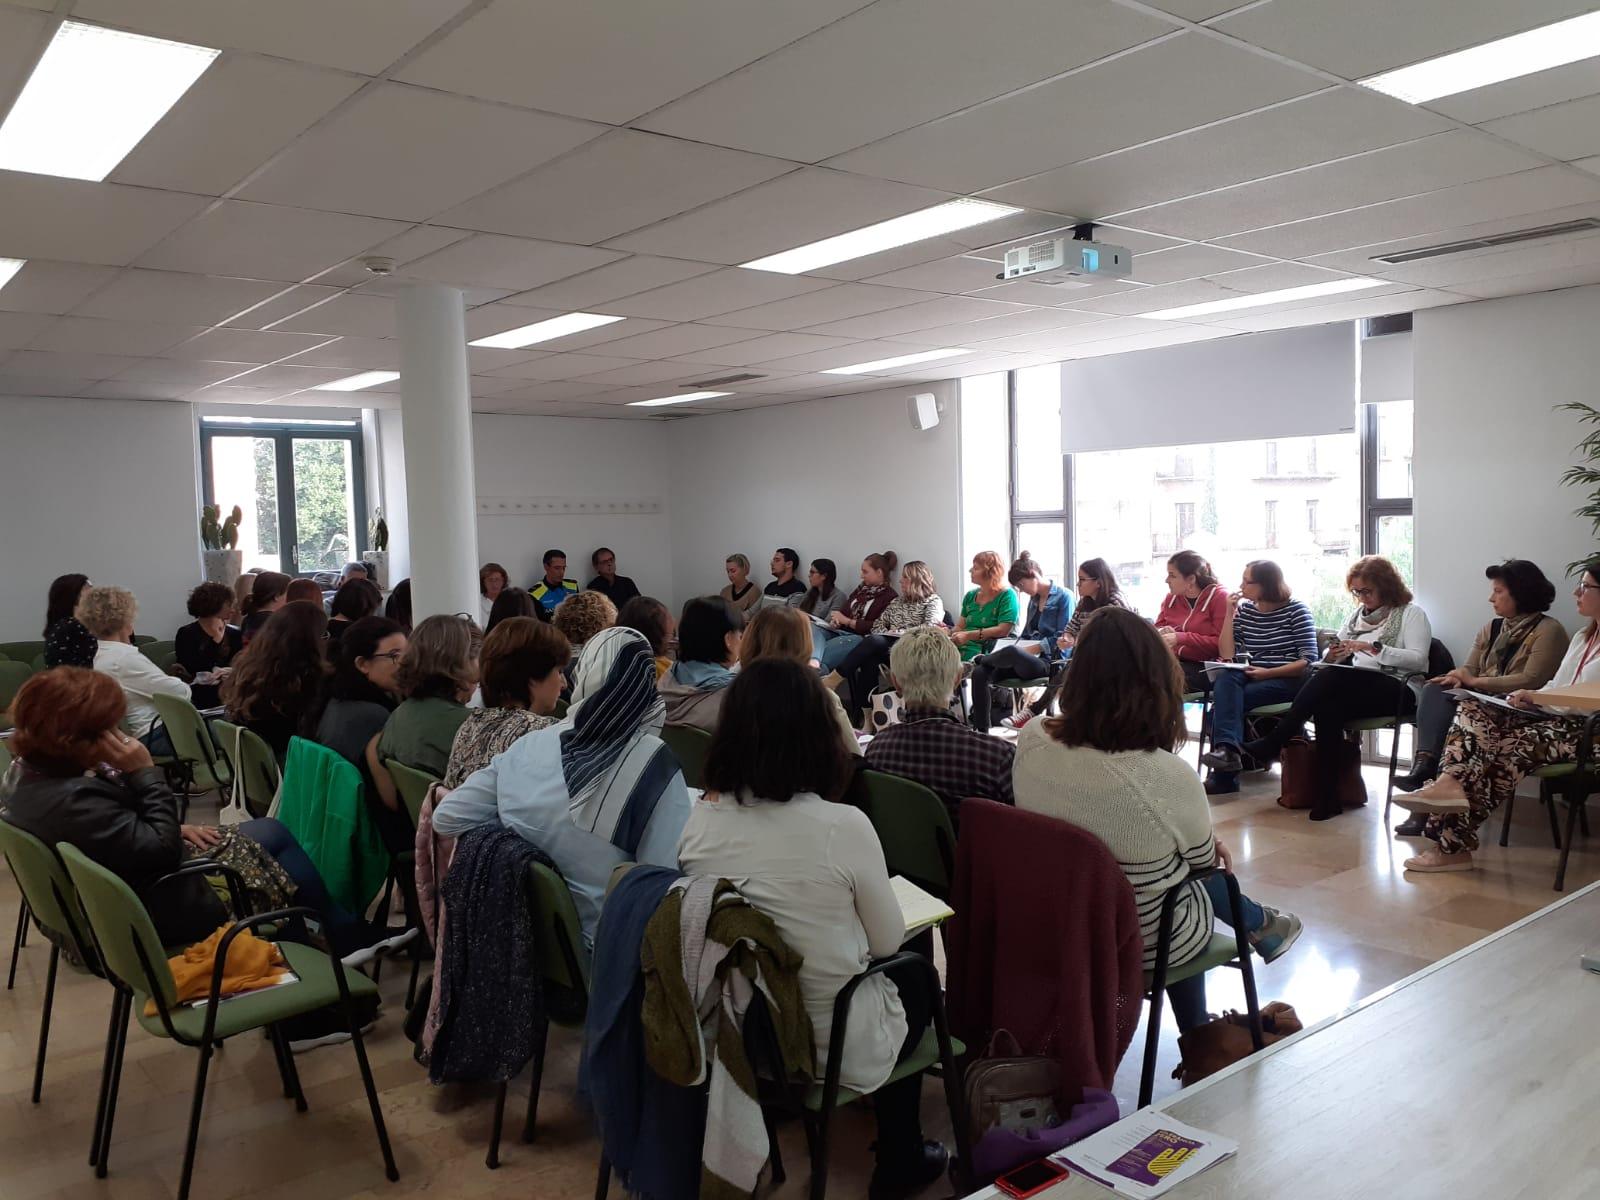 La regidora de Benestar Social, Montserrat Vilella, explica la necessitat d’aquesta nova trobada